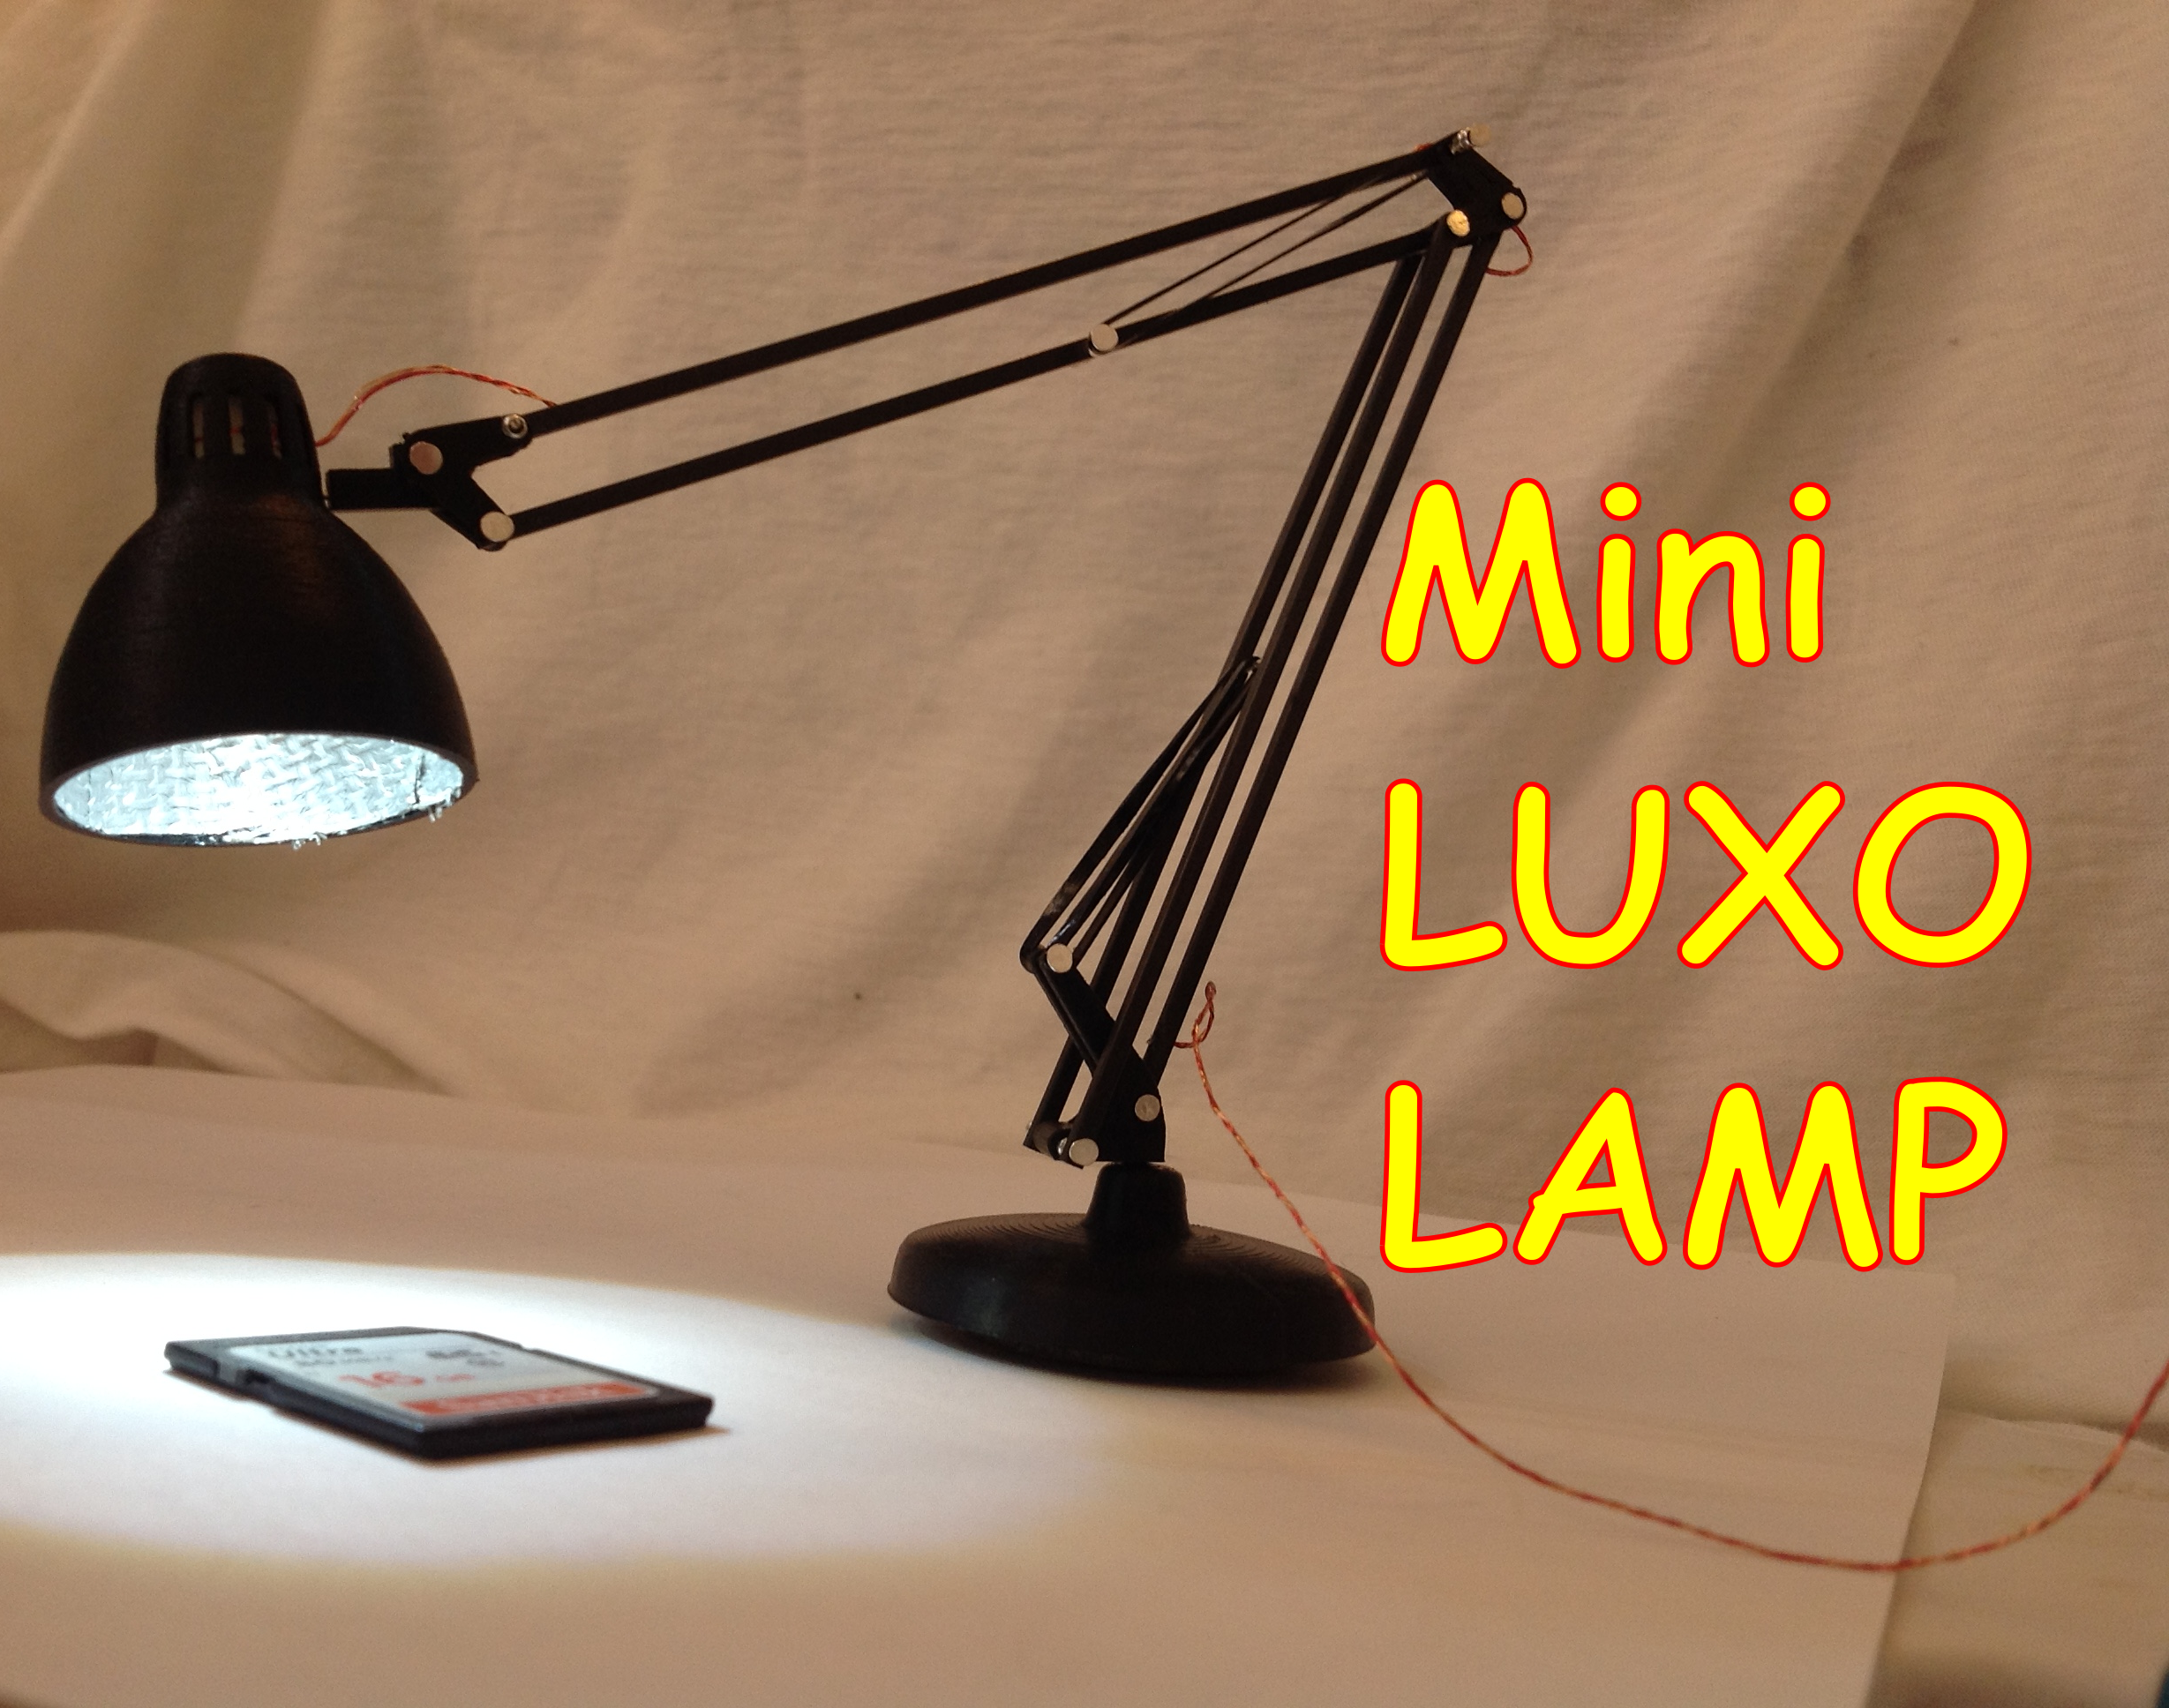 Mini LUXO Lamp